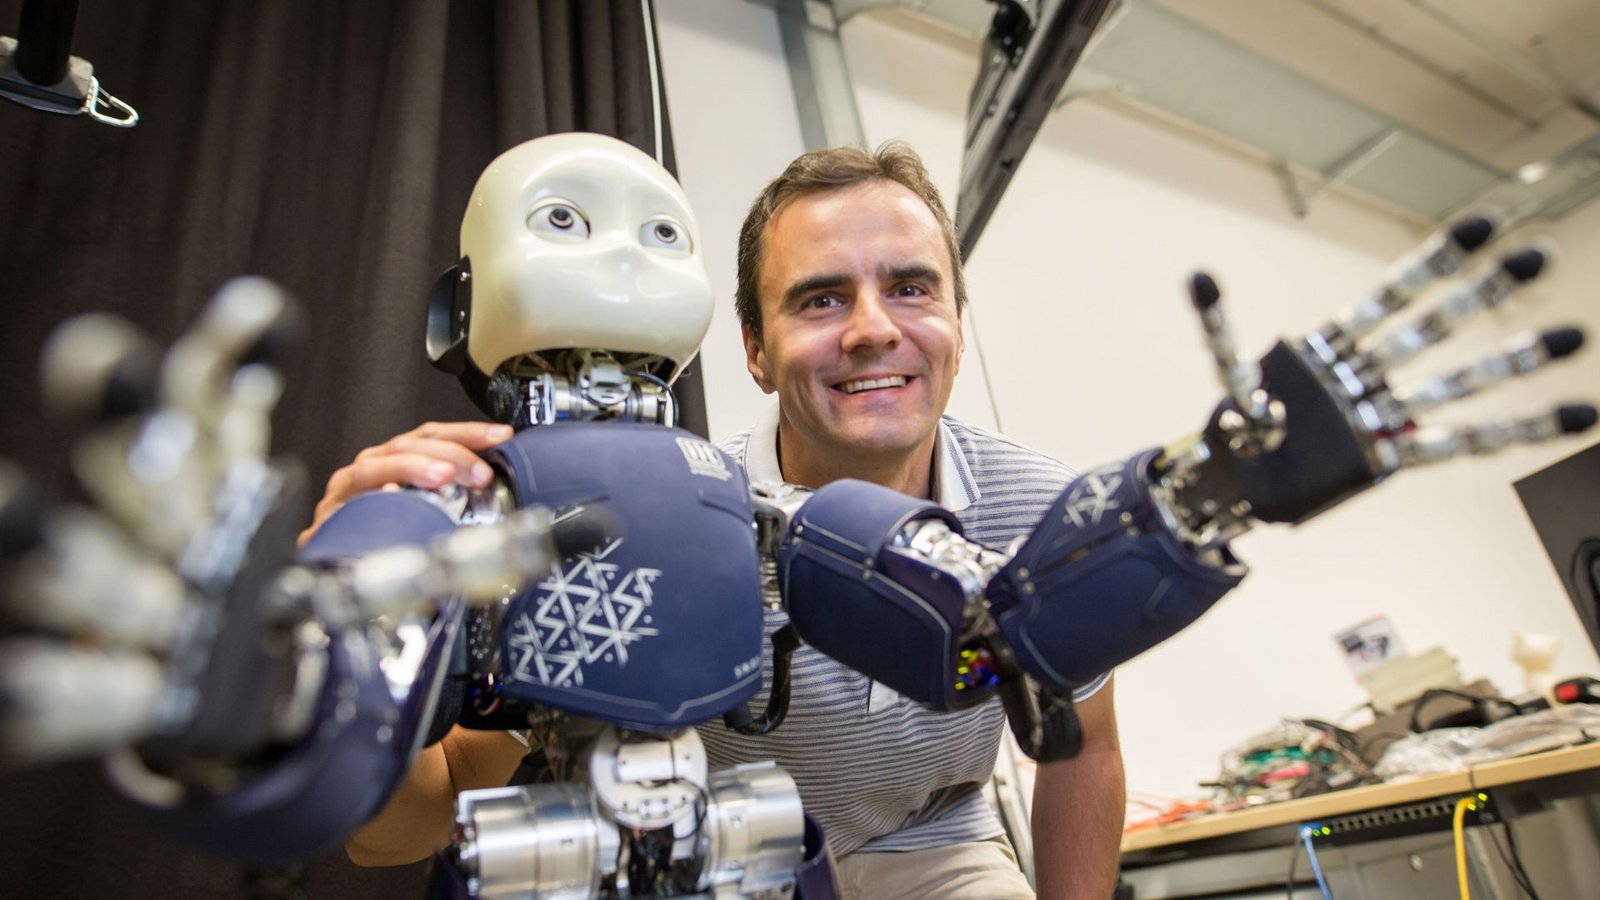 Mensch und Roboter – ein gutes Team?Foto: dpa/Frank Rumpenhorst